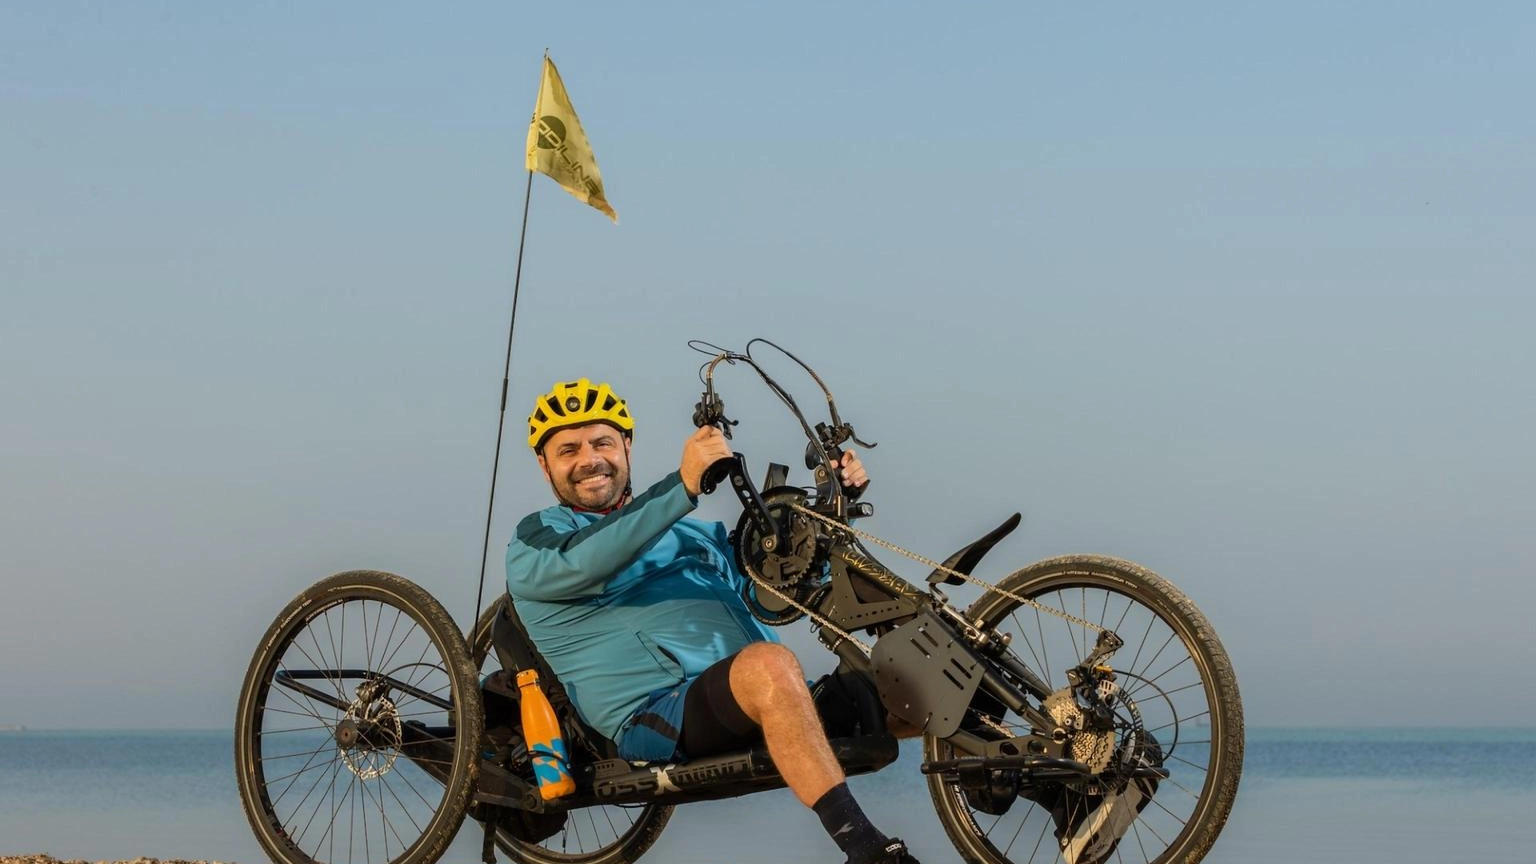 3.000 km in handbike in Arabia Saudita nel segno inclusione